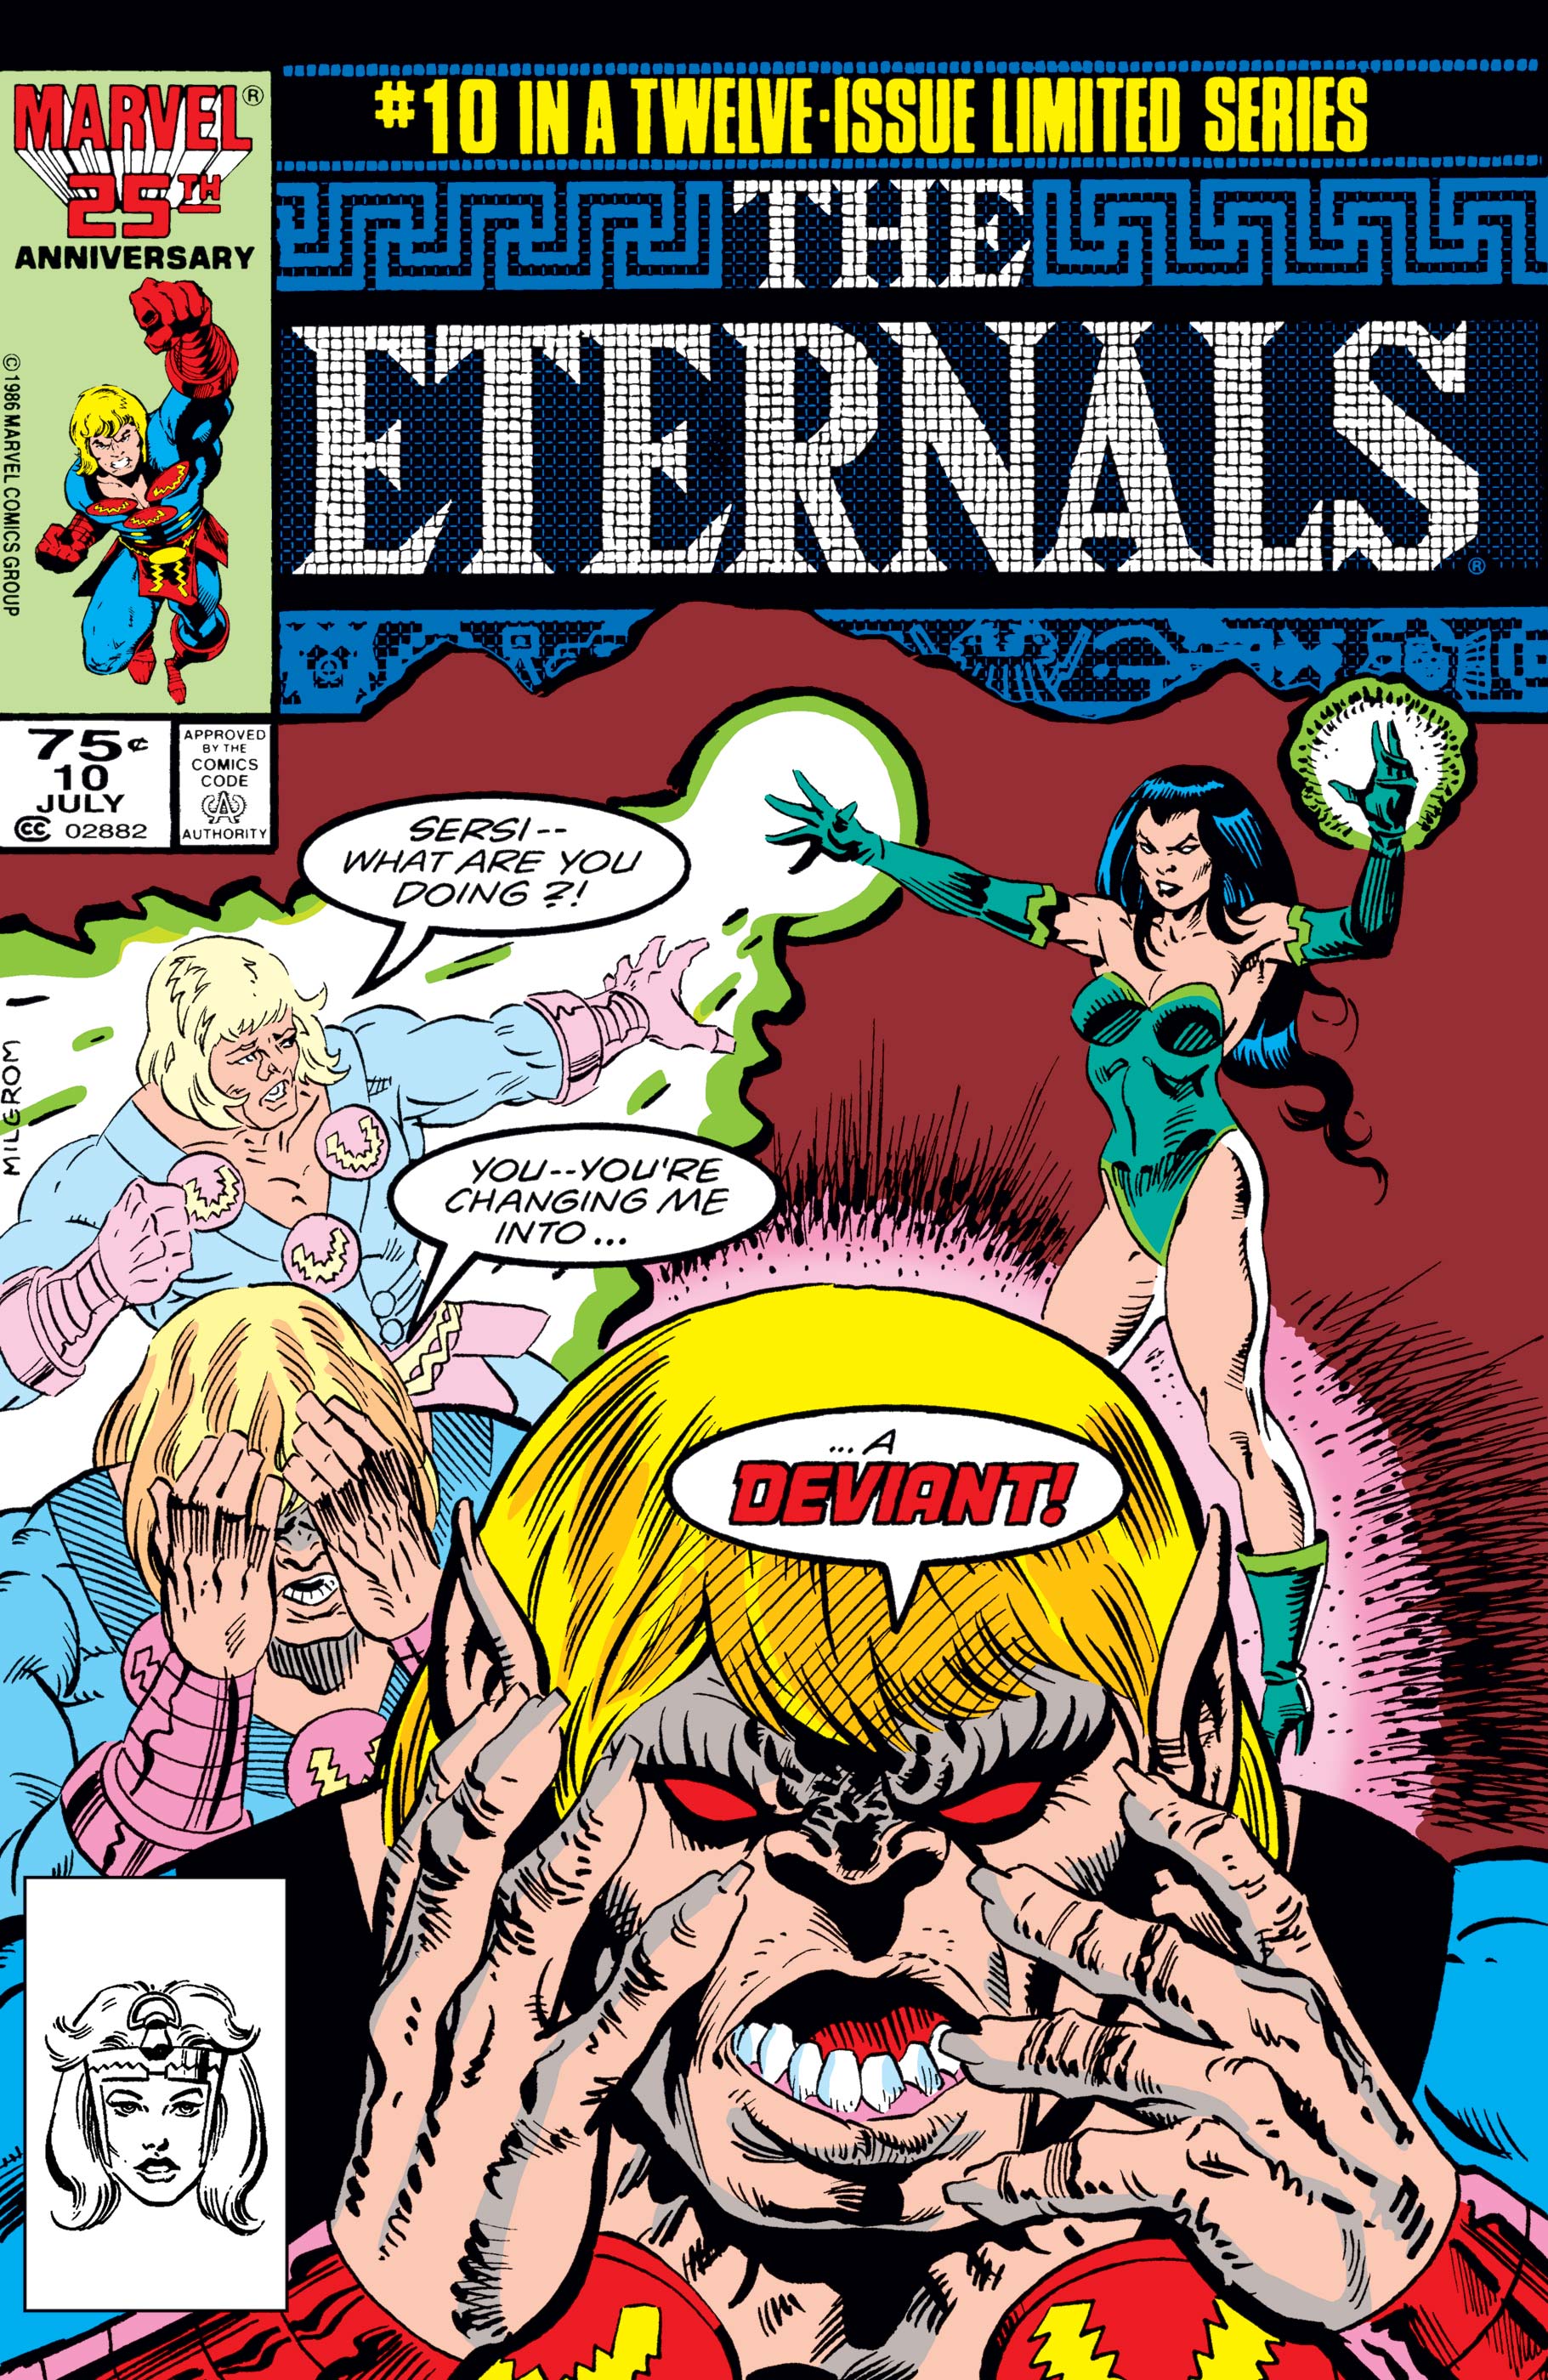 The Eternals (1985) #10